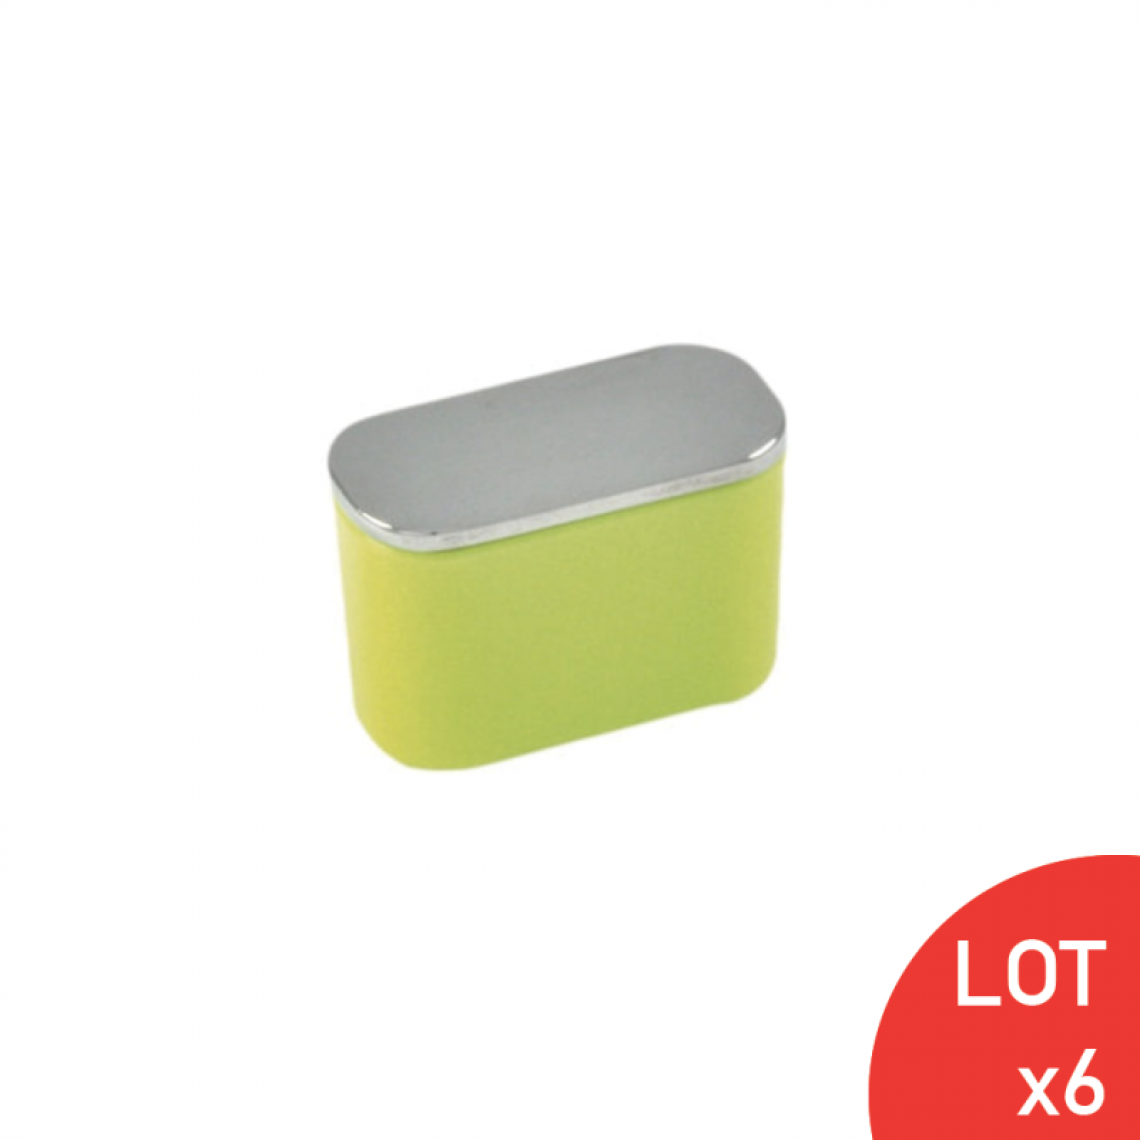 Secury-T - Bouton de meuble ovale citron vert LOT DE 6 - Poignée de meuble